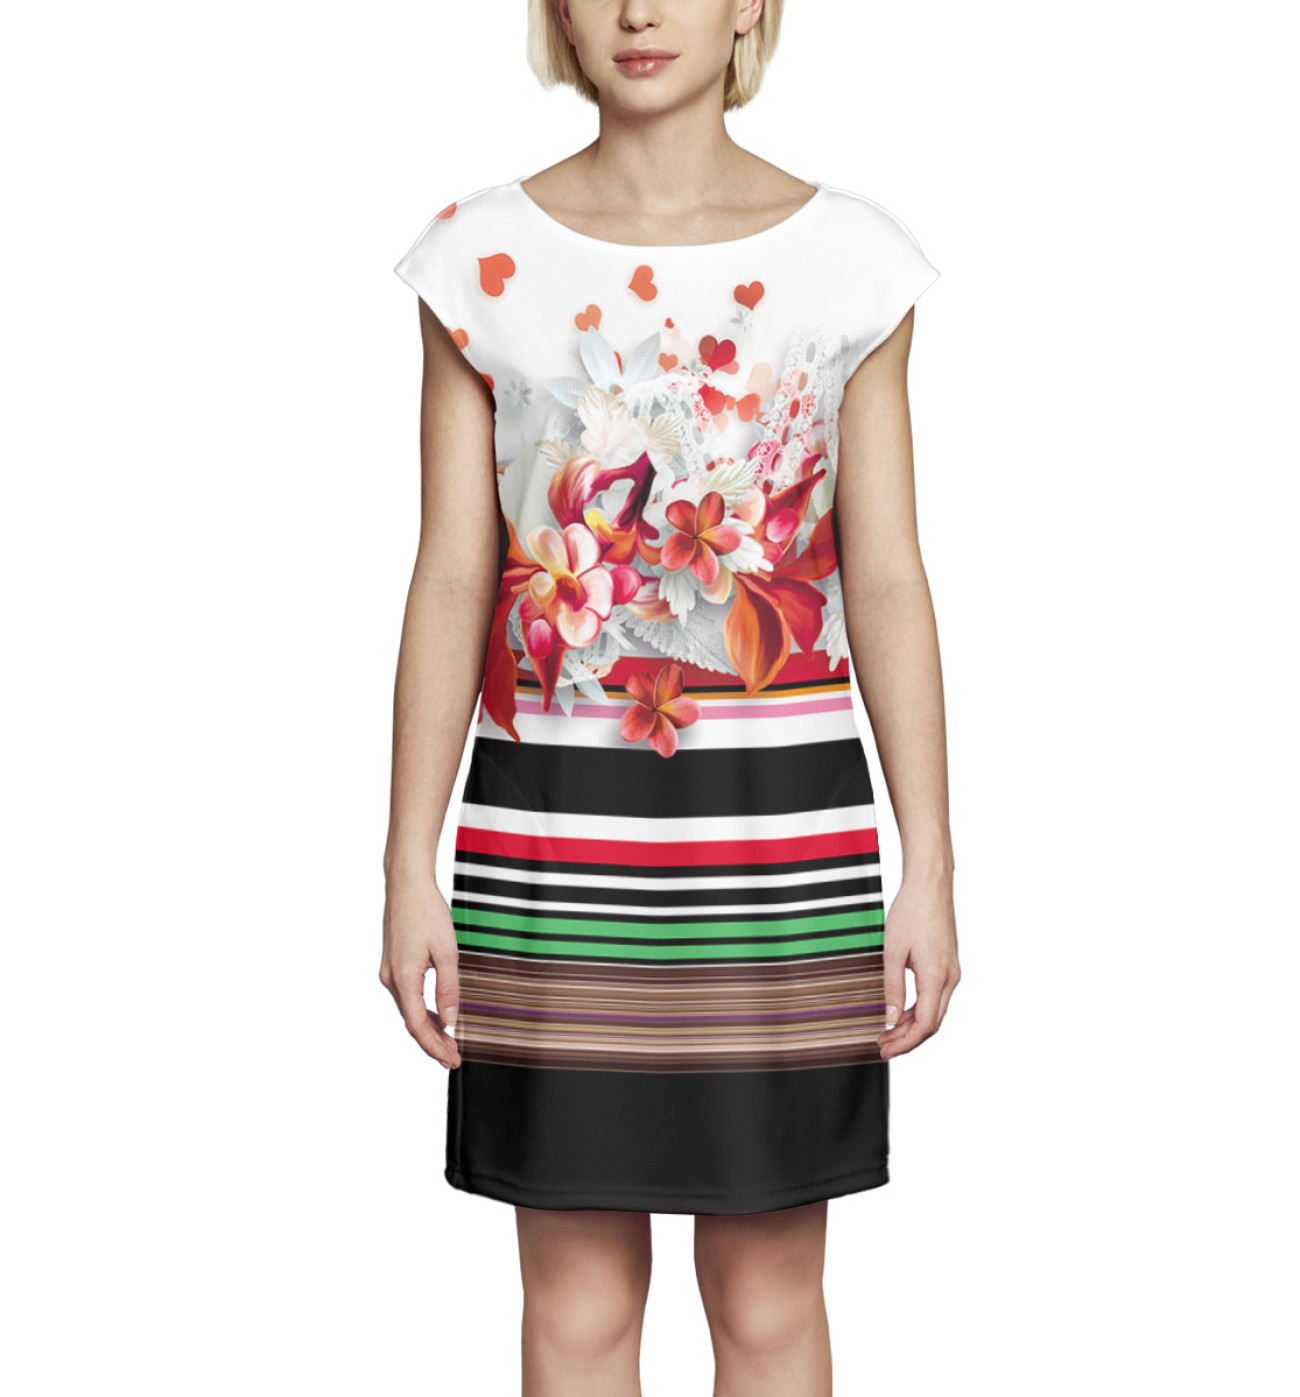 Женское Платье без рукавов Цветы, артикул: NWT-644617-pbr-1